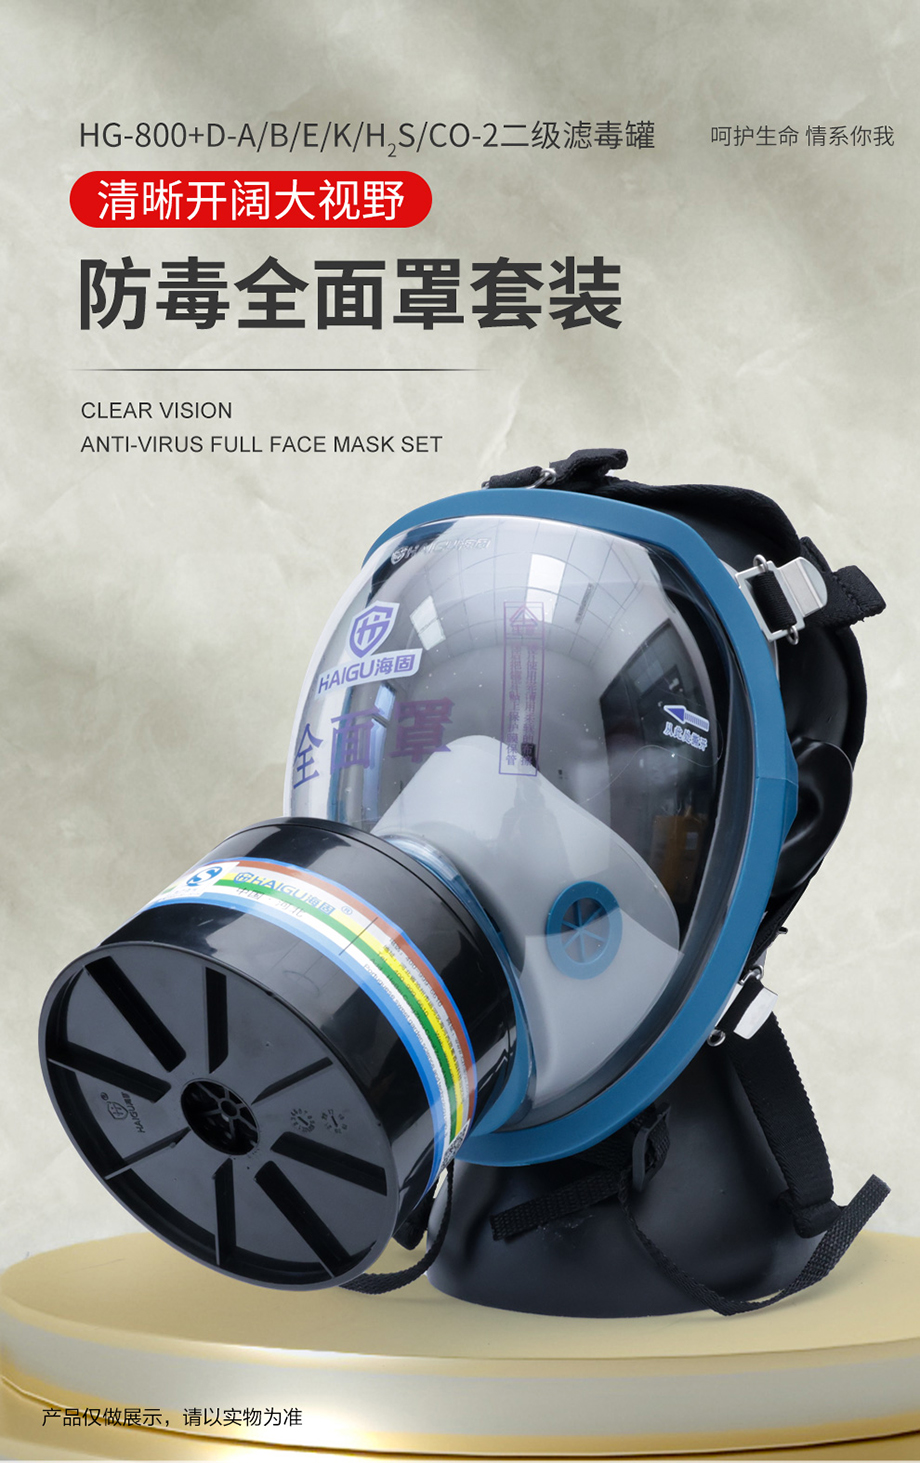 海固HG-800全面罩+D-A/B/E/K/H2S/CO-2 多功能活性炭滤毒罐 综合气体防护套装